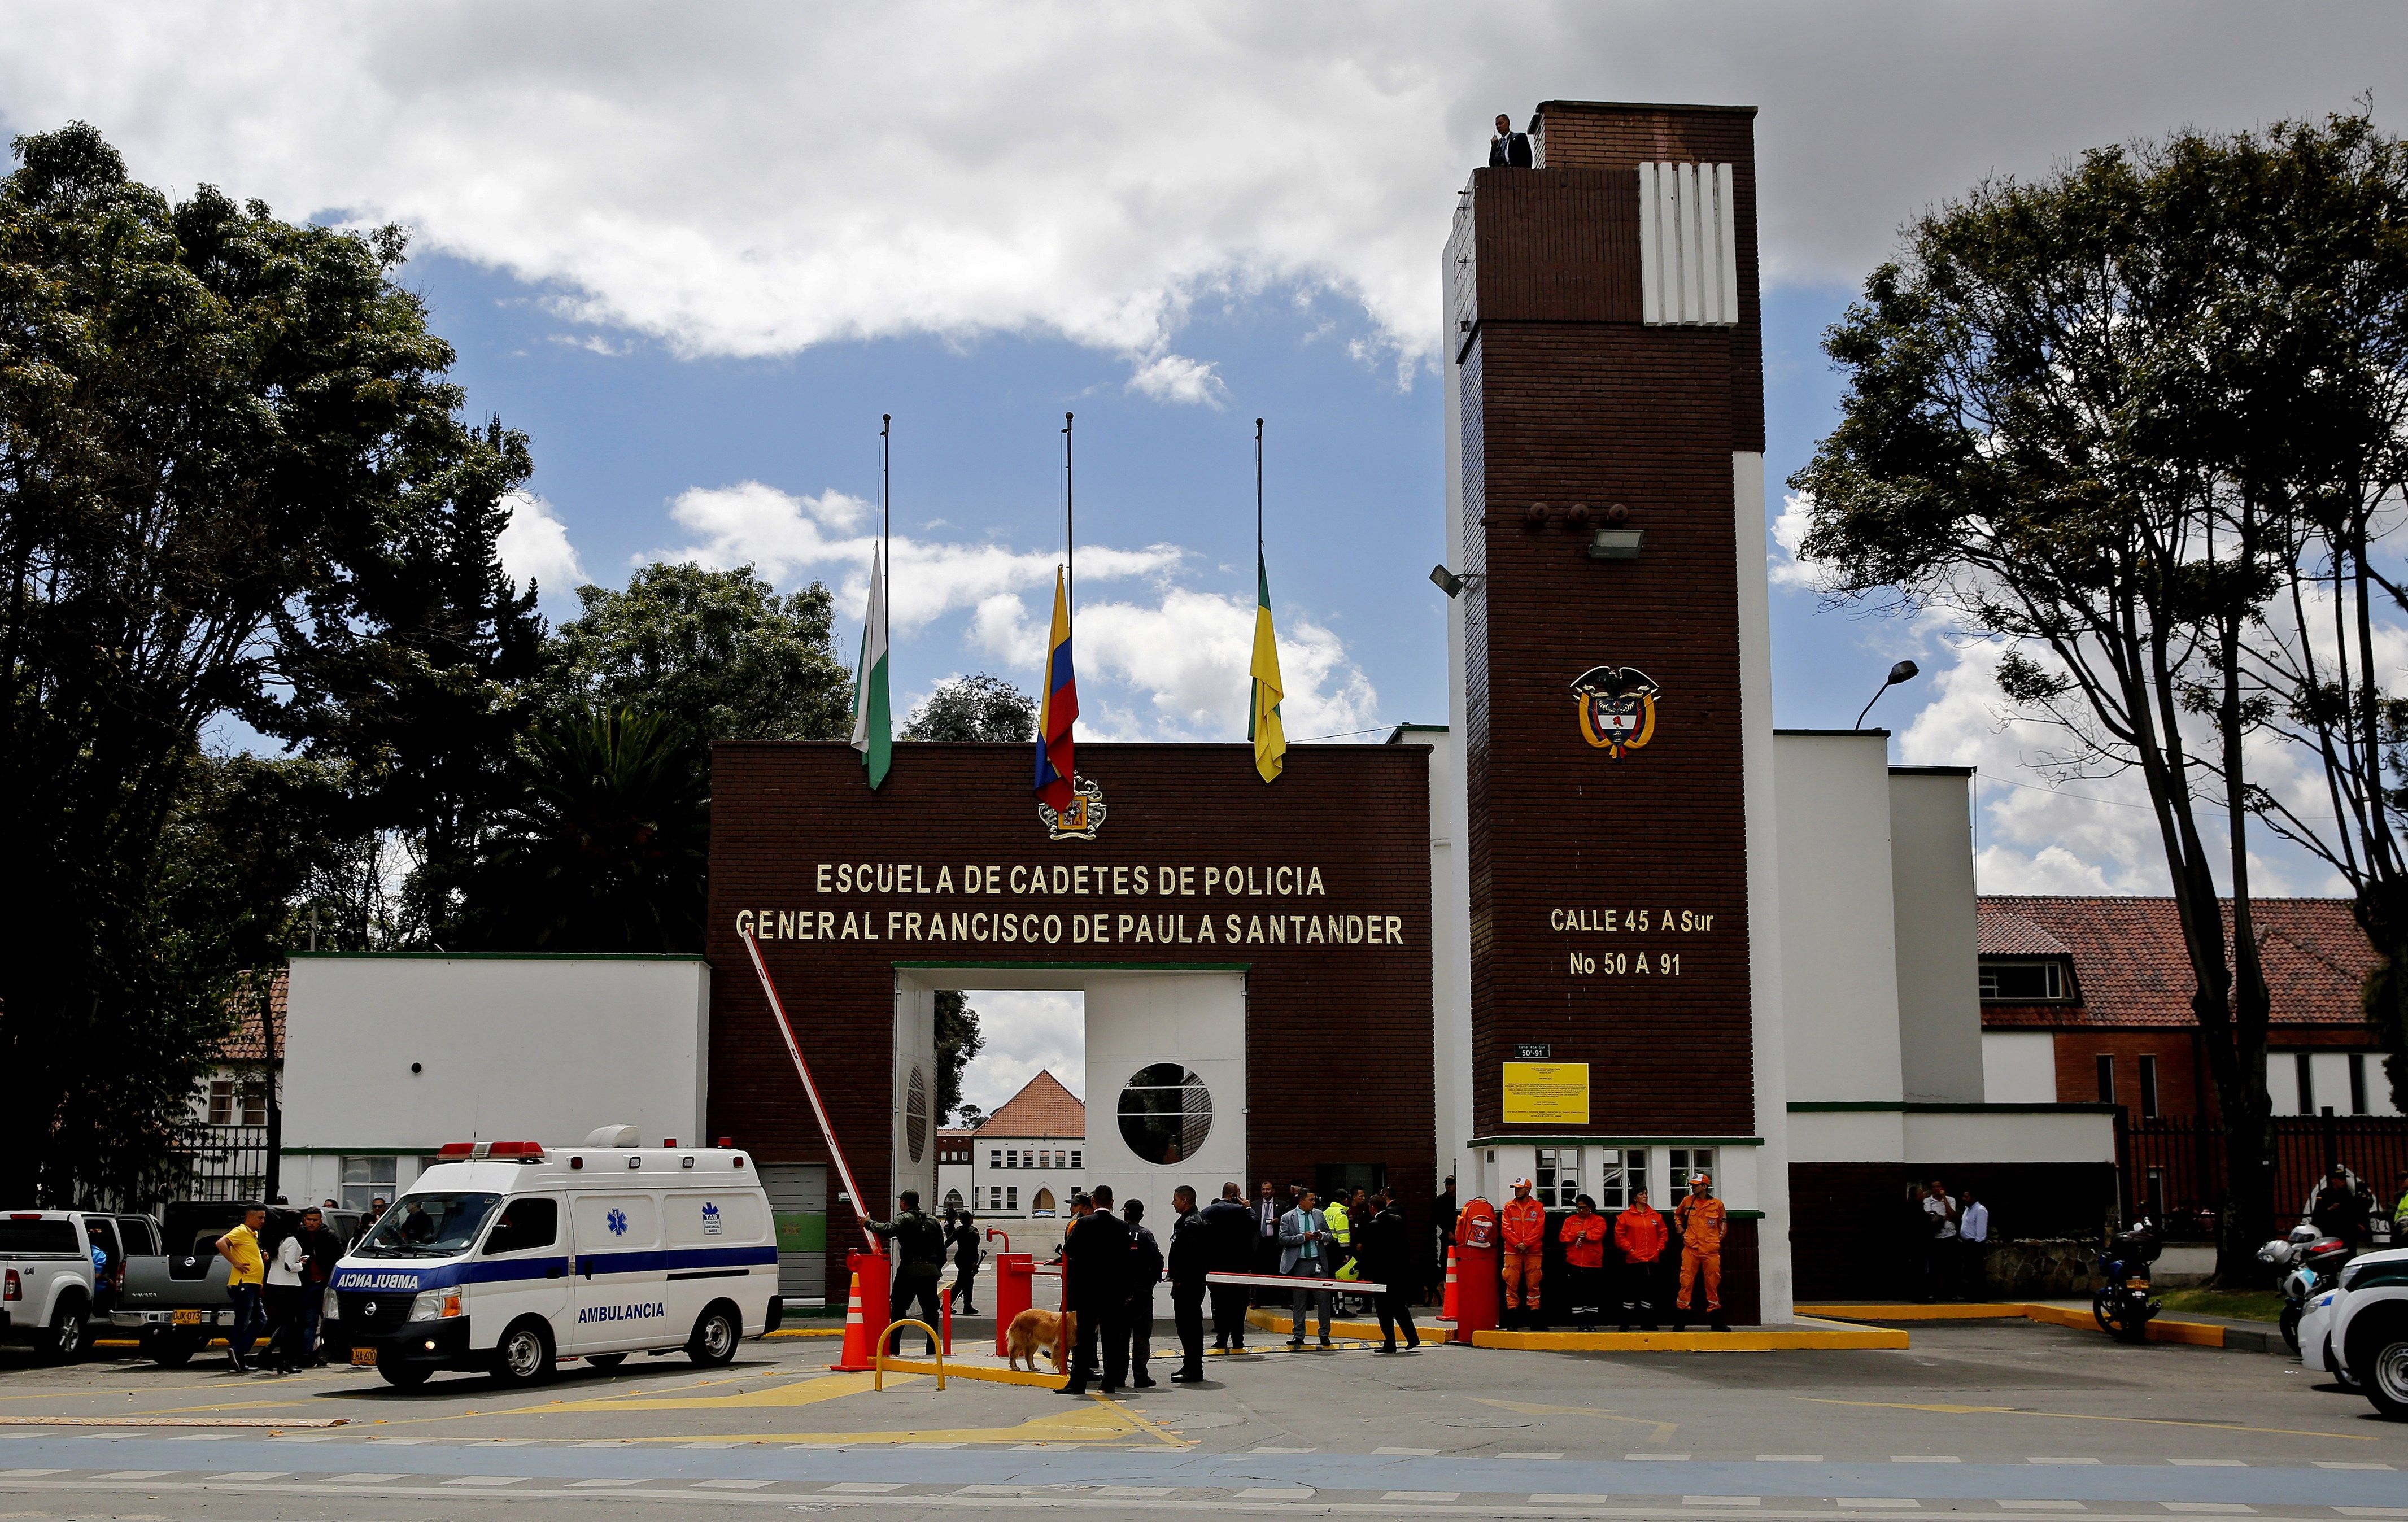 Un atemptat a Bogotà deixa 21 morts, el més greu de l'última dècada